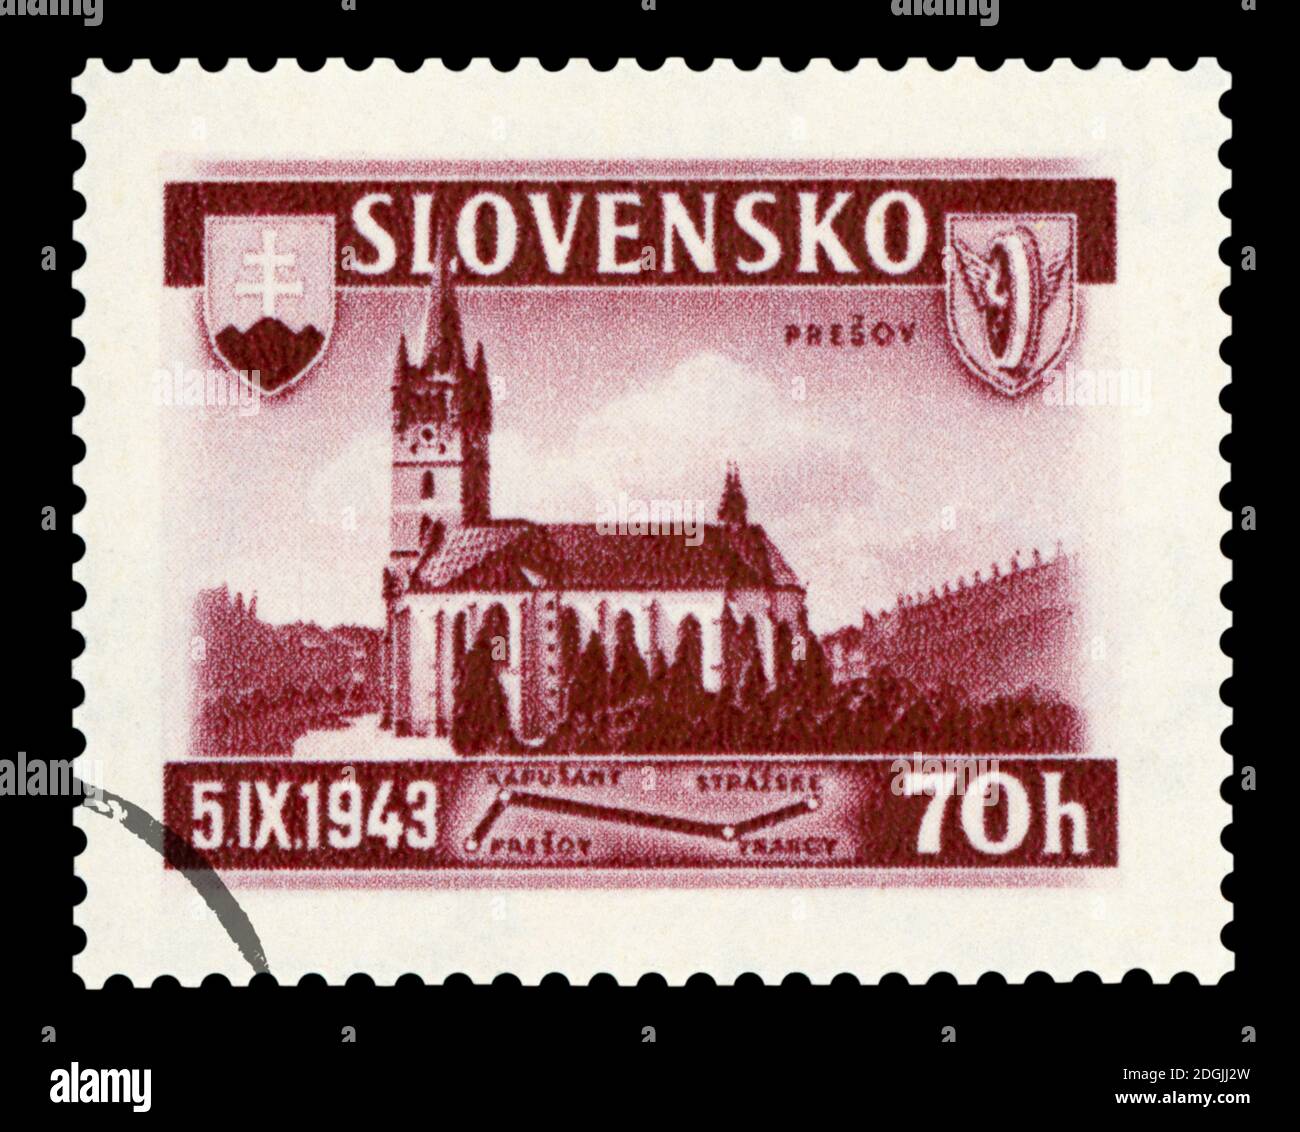 SLOWAKEI - UM 1943: Eine in der Slowakei gedruckte Briefmarke zeigt die katholische Kirche in der Stadt Presov, um 1943. Stockfoto